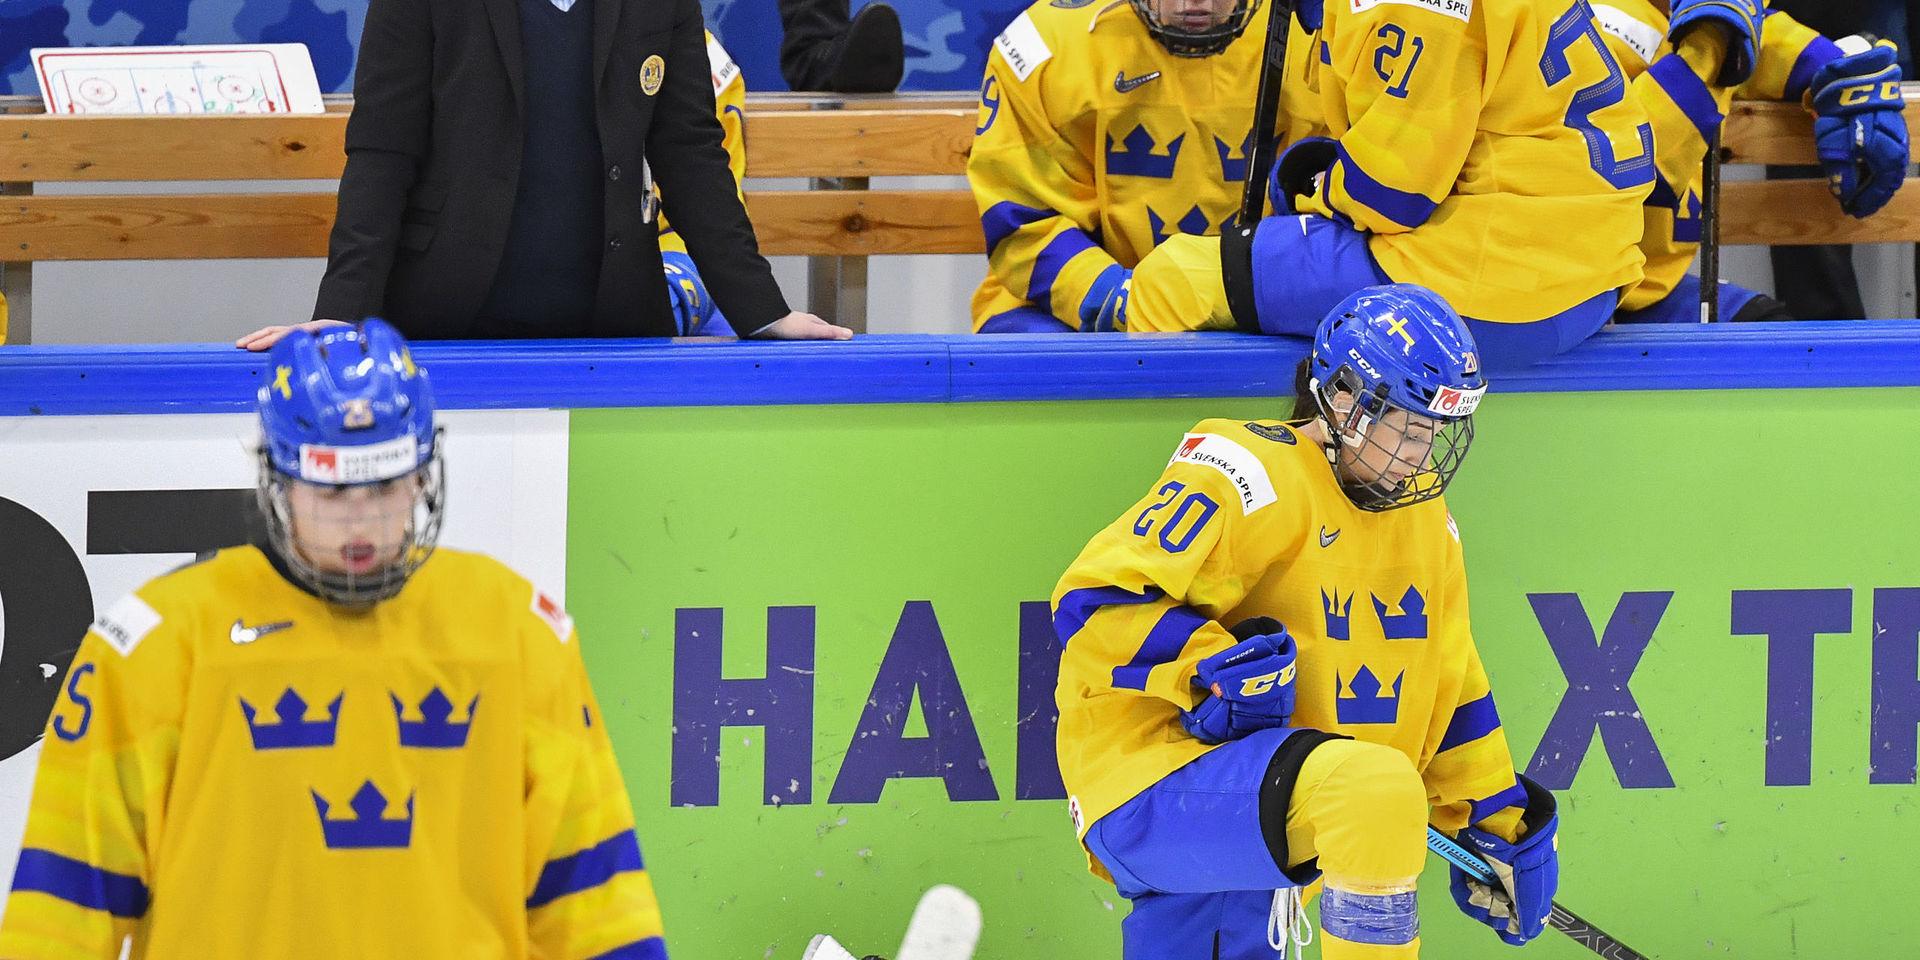 Konflikten med Damkronorna är en del i turbulensen kring Svenska ishockeyförbundet. Arkivbild.